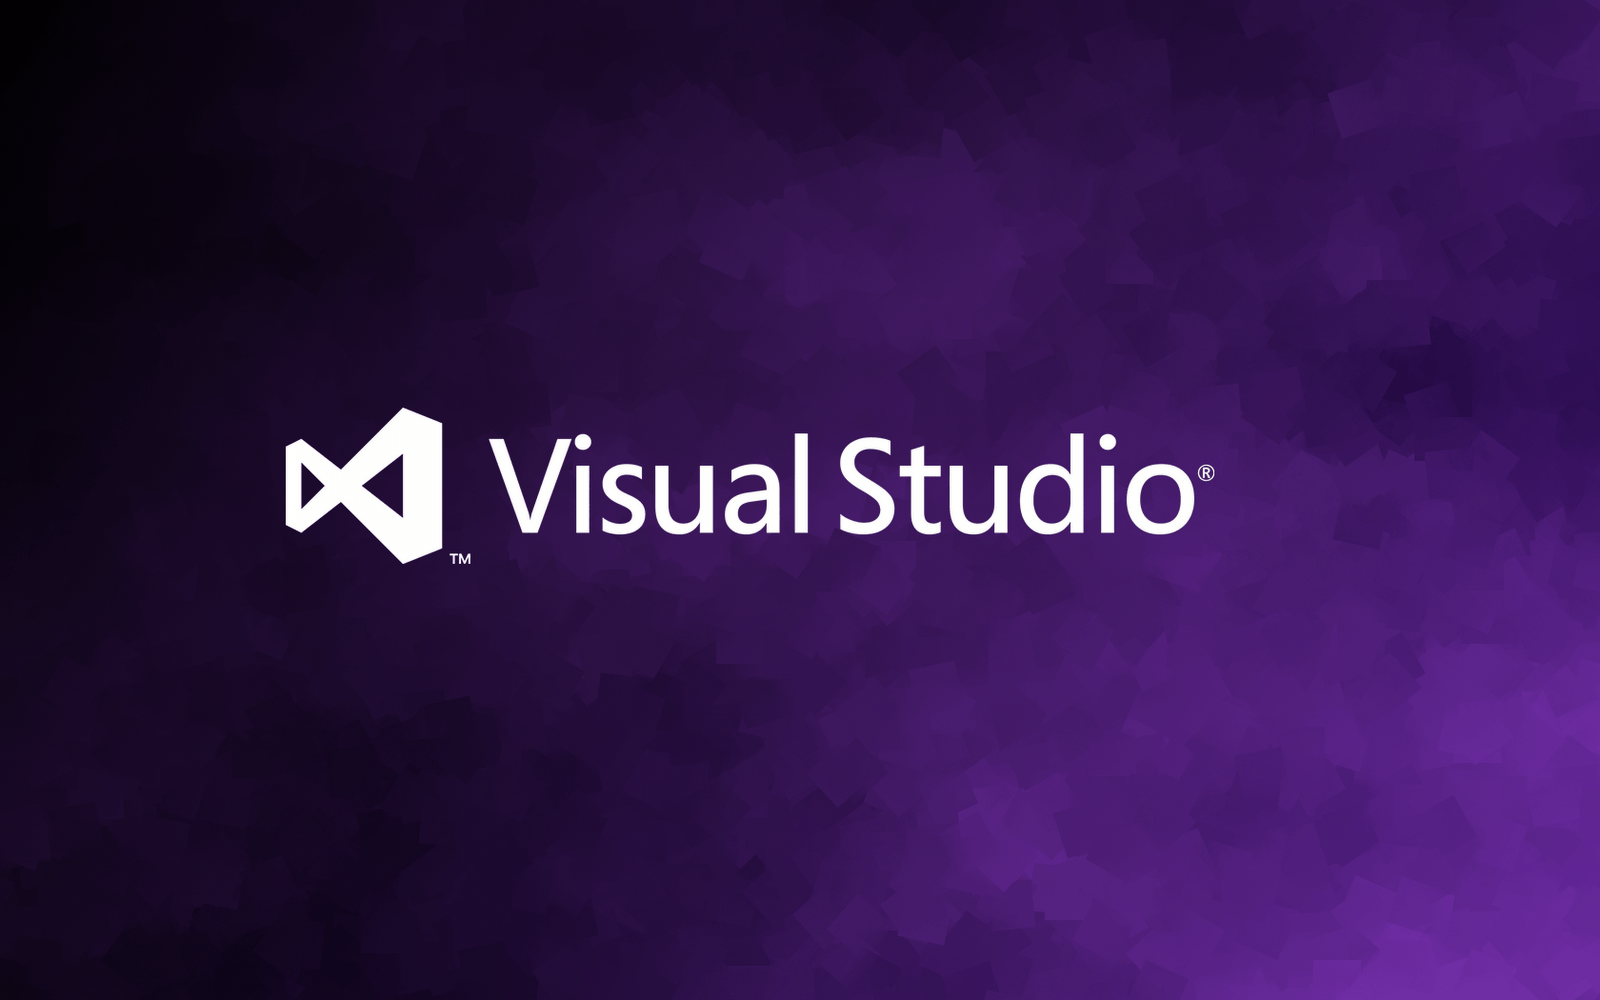 Visual Studio Backgrounds: Hãy trang hoàng giao diện làm việc của bạn với bộ sưu tập hình nền Visual Studio độc đáo. Khám phá những thước hình đẹp mắt, phù hợp với sở thích cả những lập trình viên chuyên nghiệp lẫn mới tập tành. Hãy cùng khám phá và nâng cao trải nghiệm làm việc của bạn!